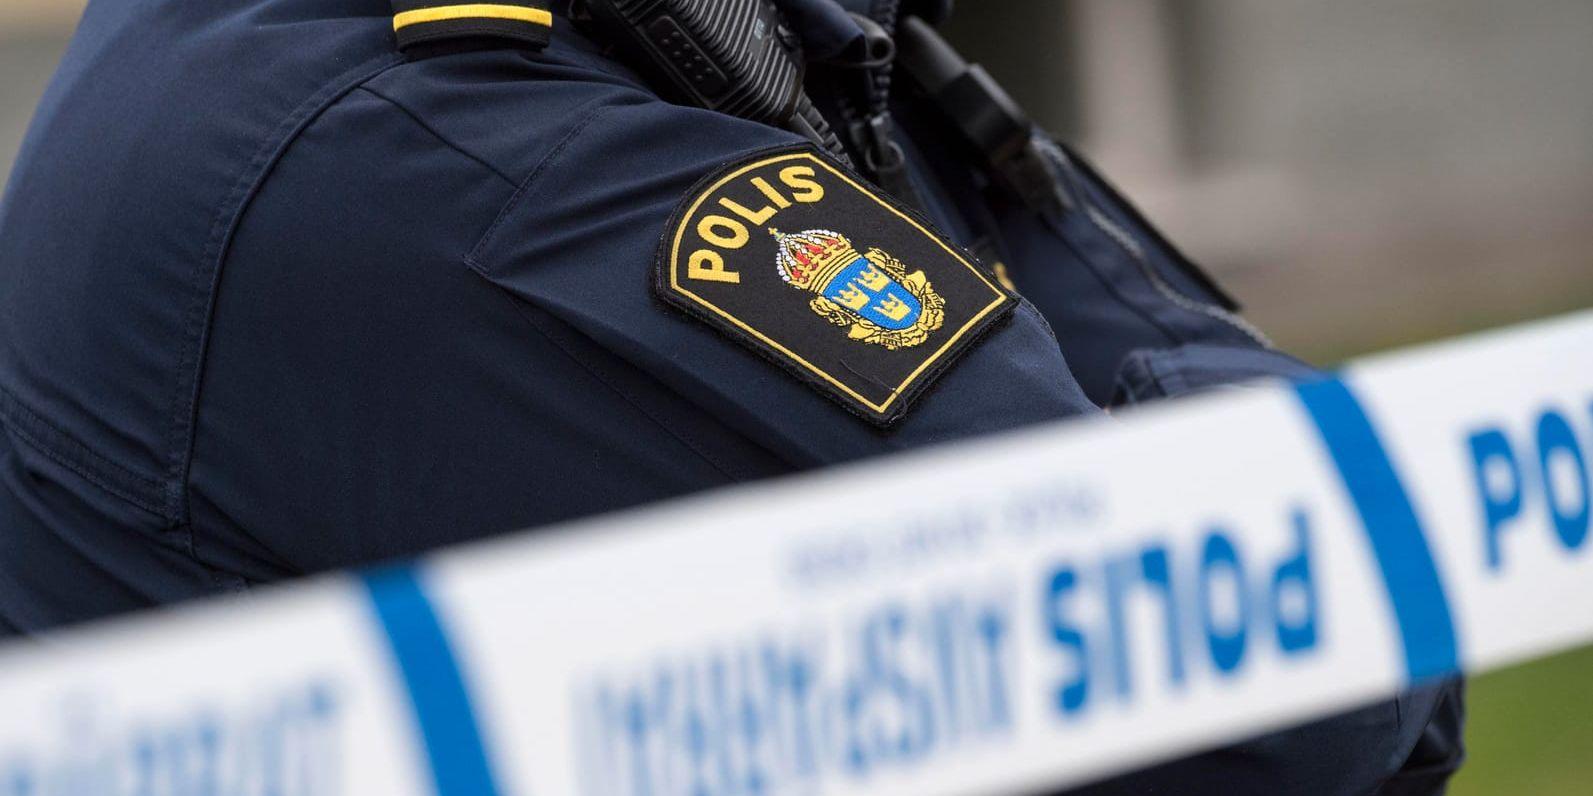 En man har knivskurits i armen i centrala Göteborg, polisen söker nu två misstänka gärningsmän. Arkivbild.